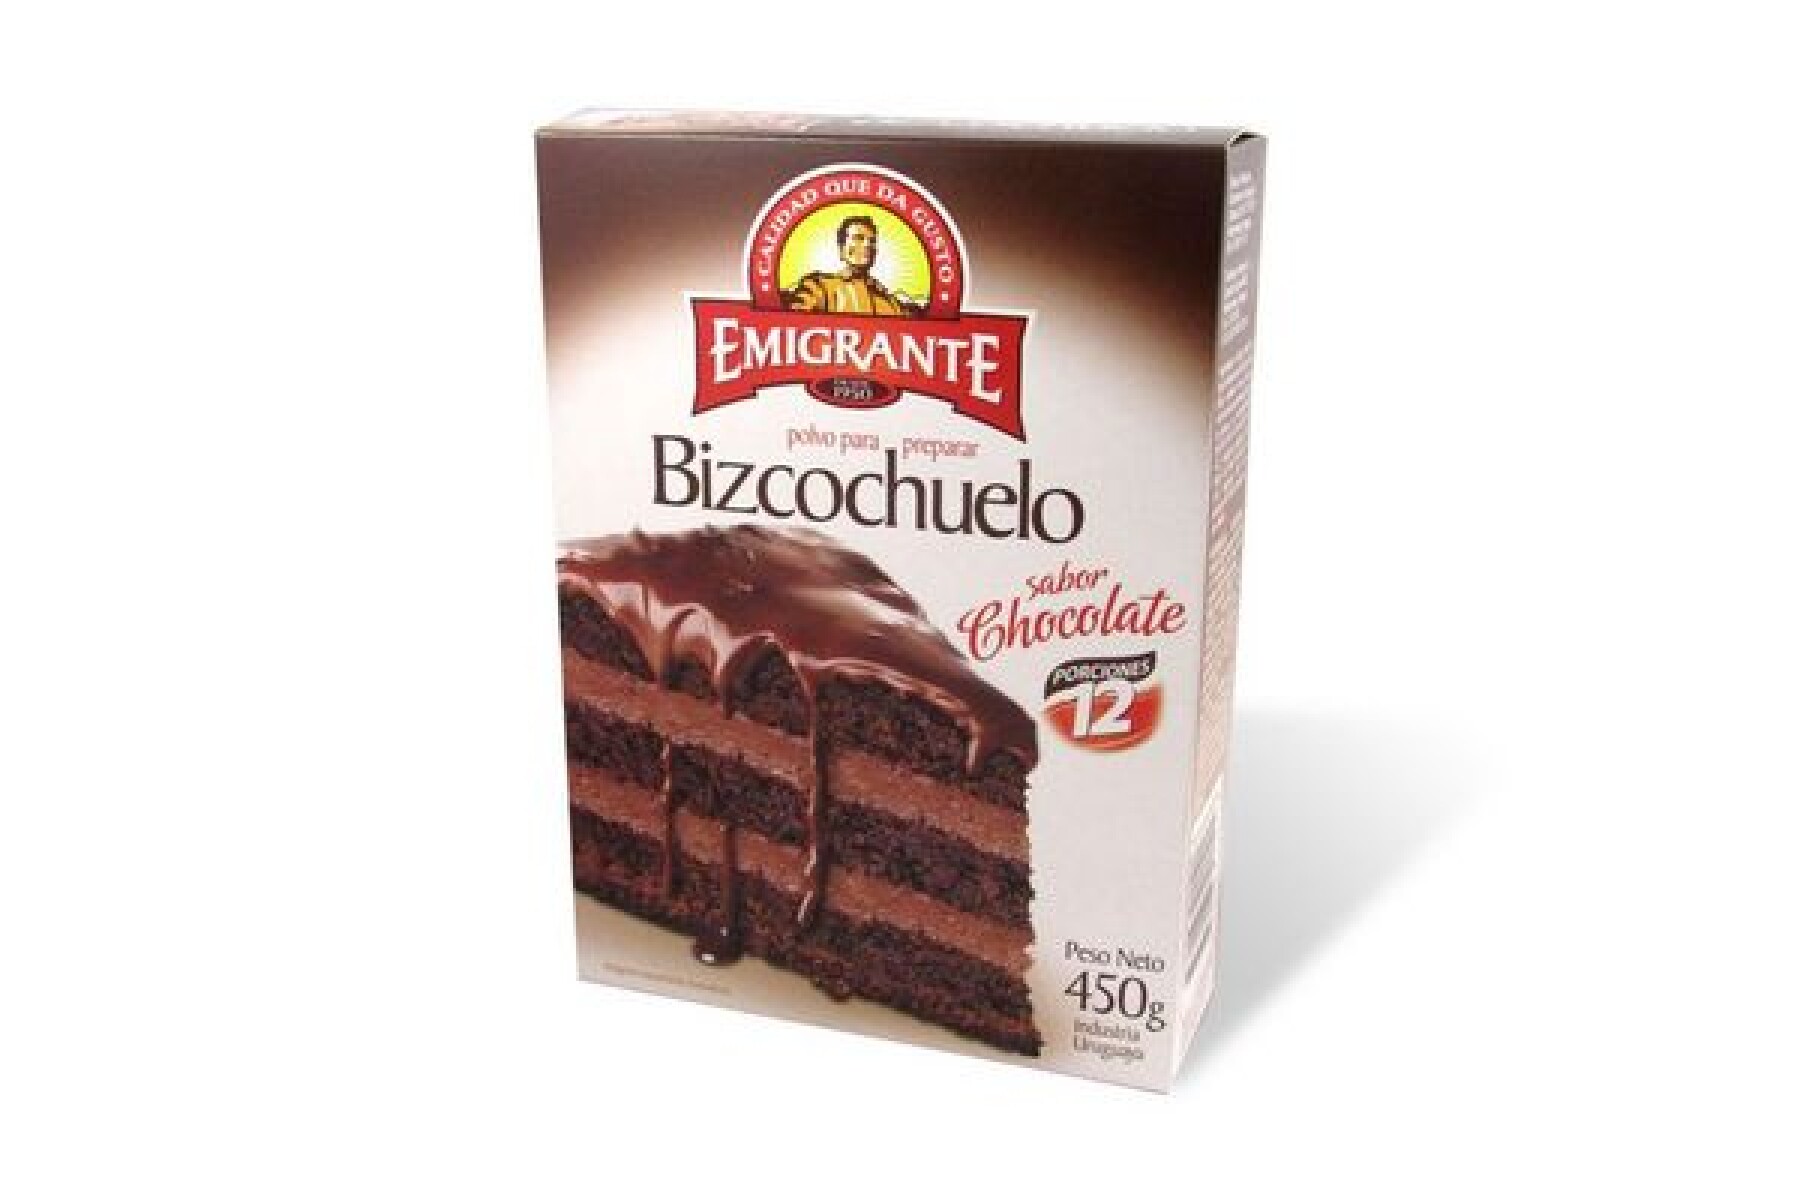 BIZCOCHUELO CHOCOLATE EMIGRANTE 450 G 